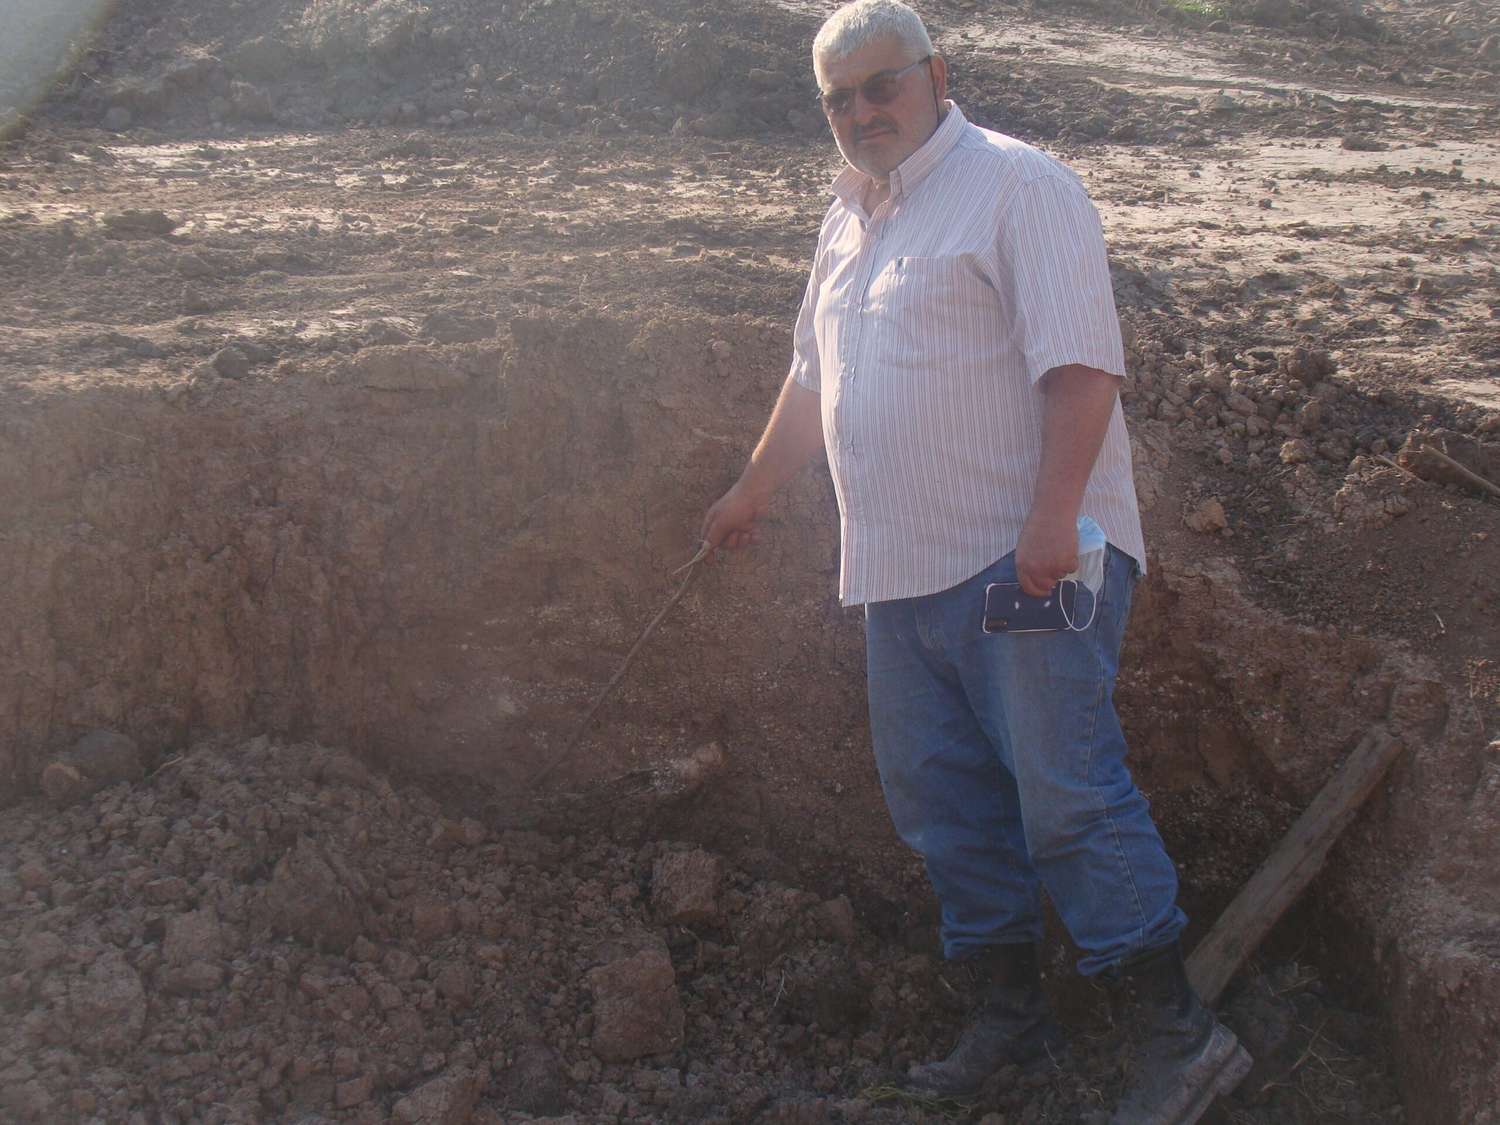 La erosión del suelo en el borde costero del arroyo Gómez permitió hallar un fósil de gliptodonte